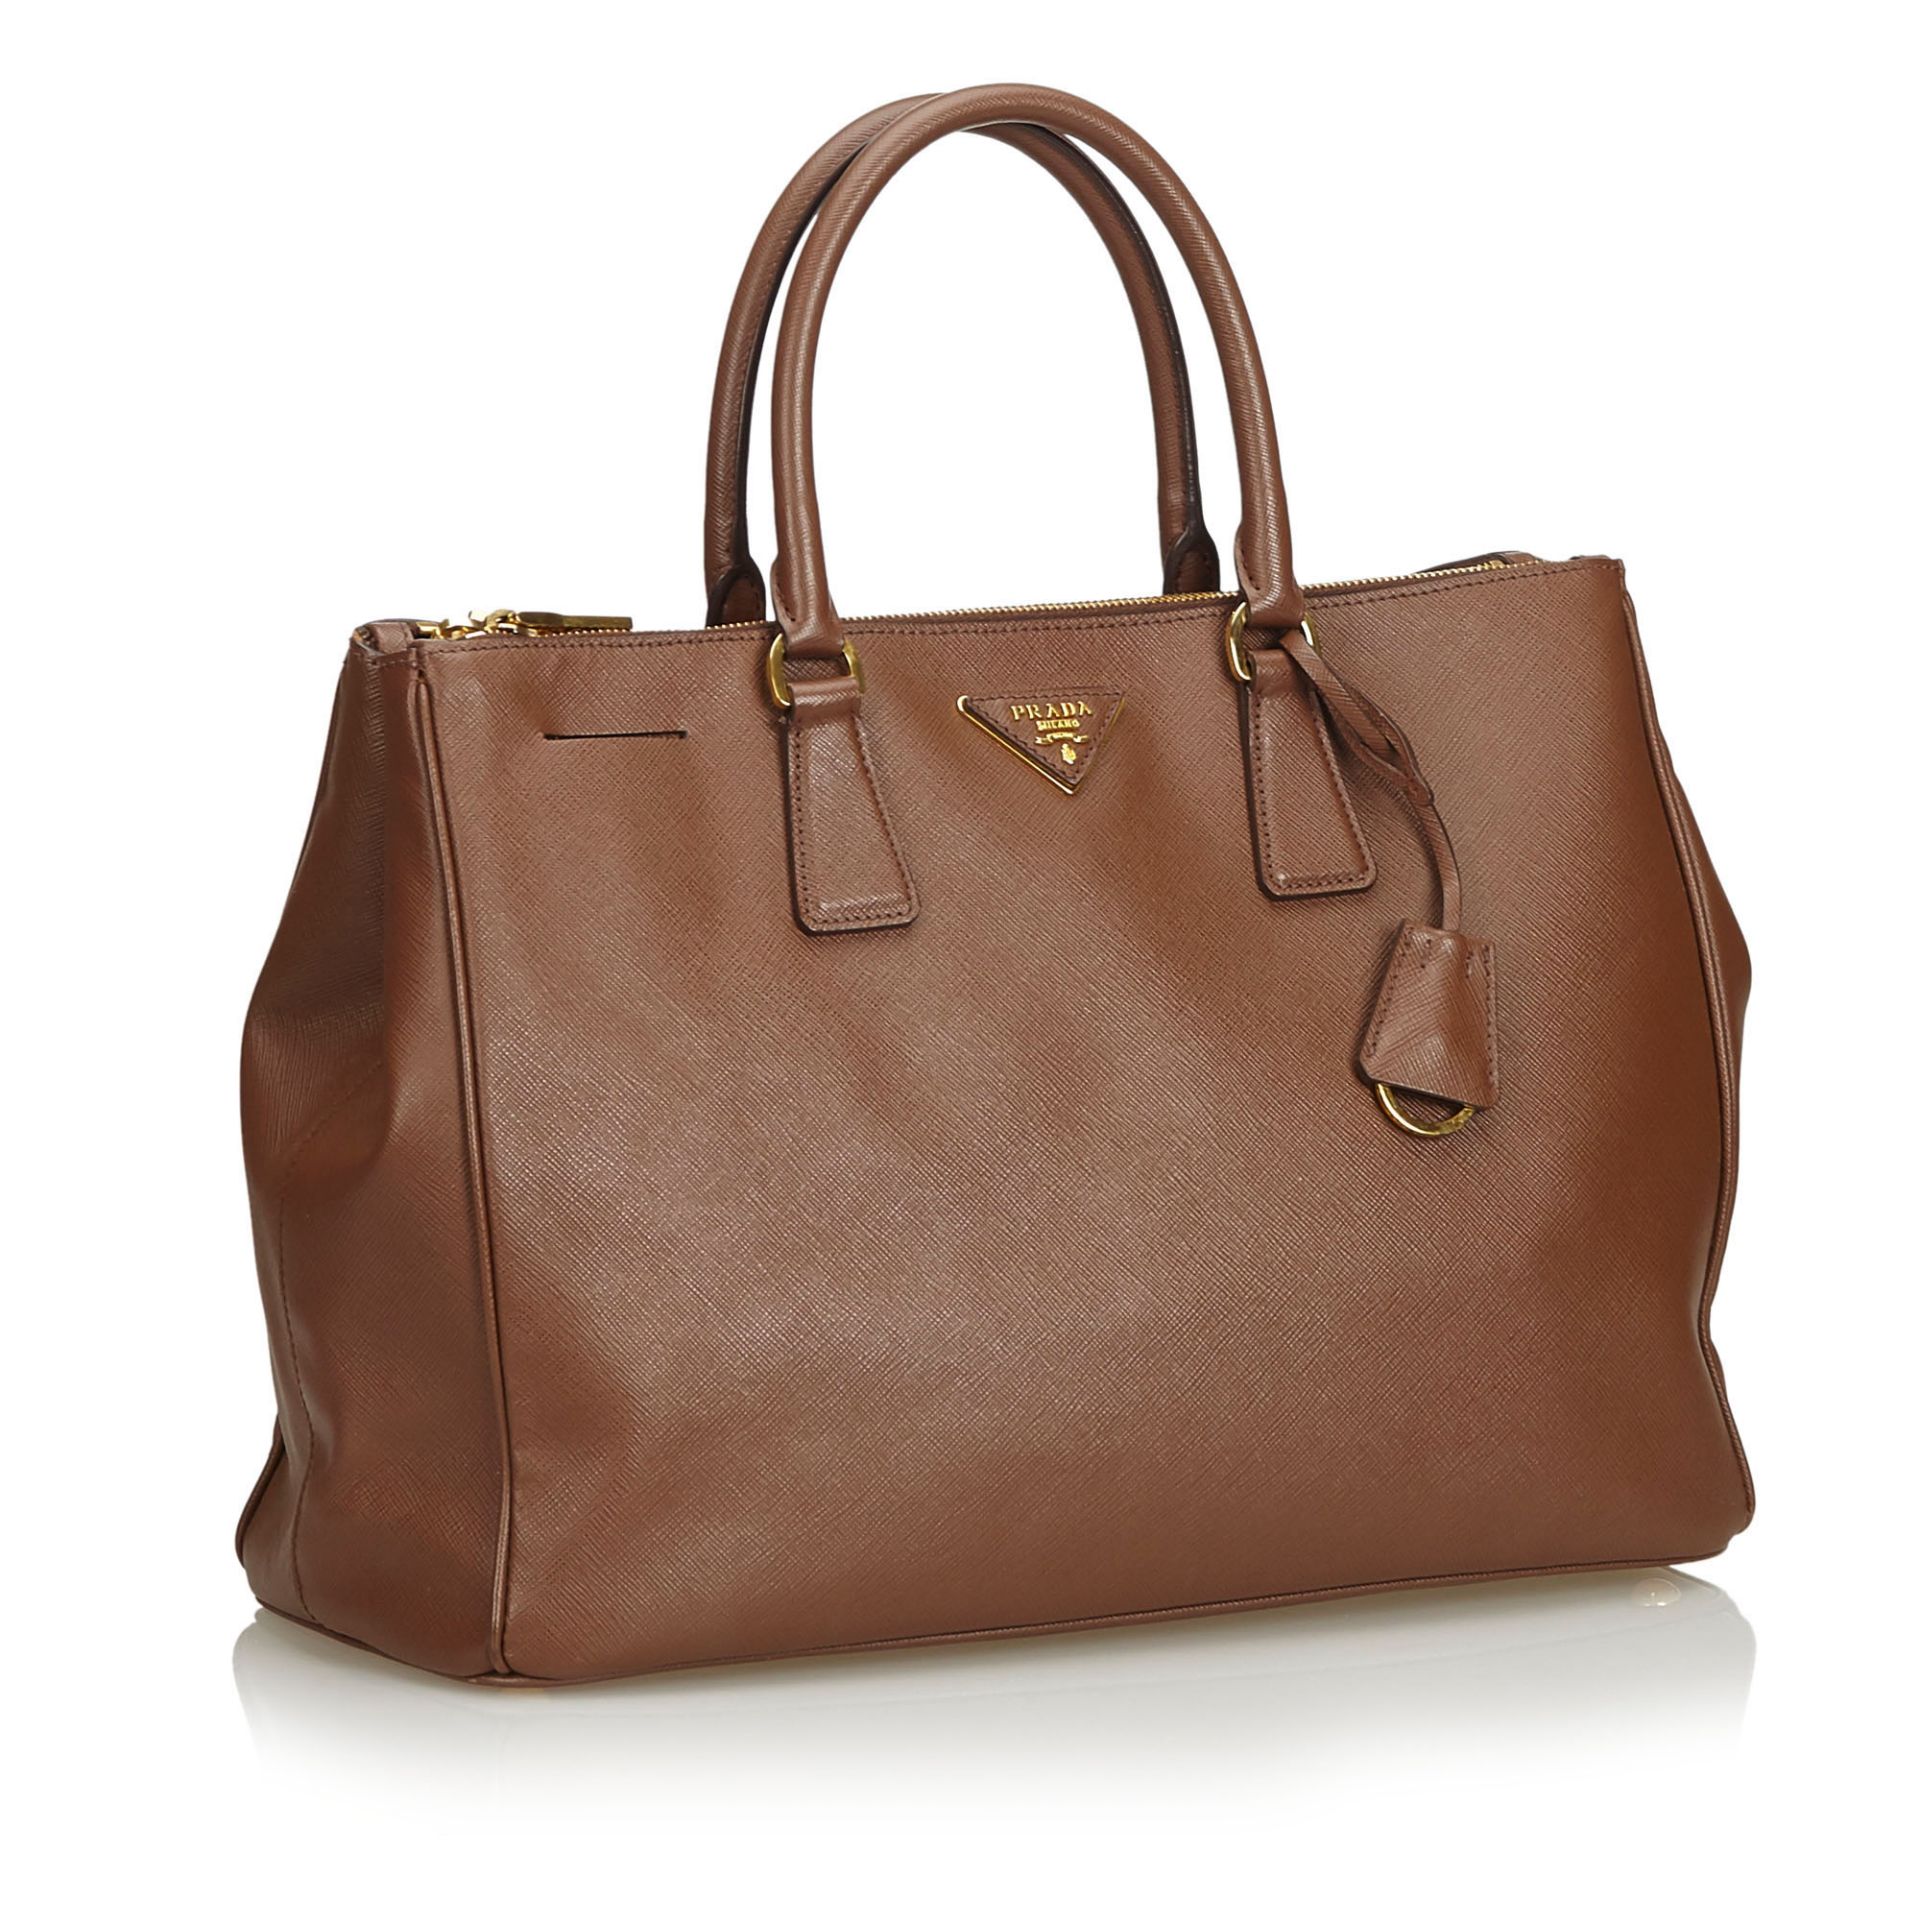 Prada Saffiano Leather Galleria Handbag - Image 7 of 10